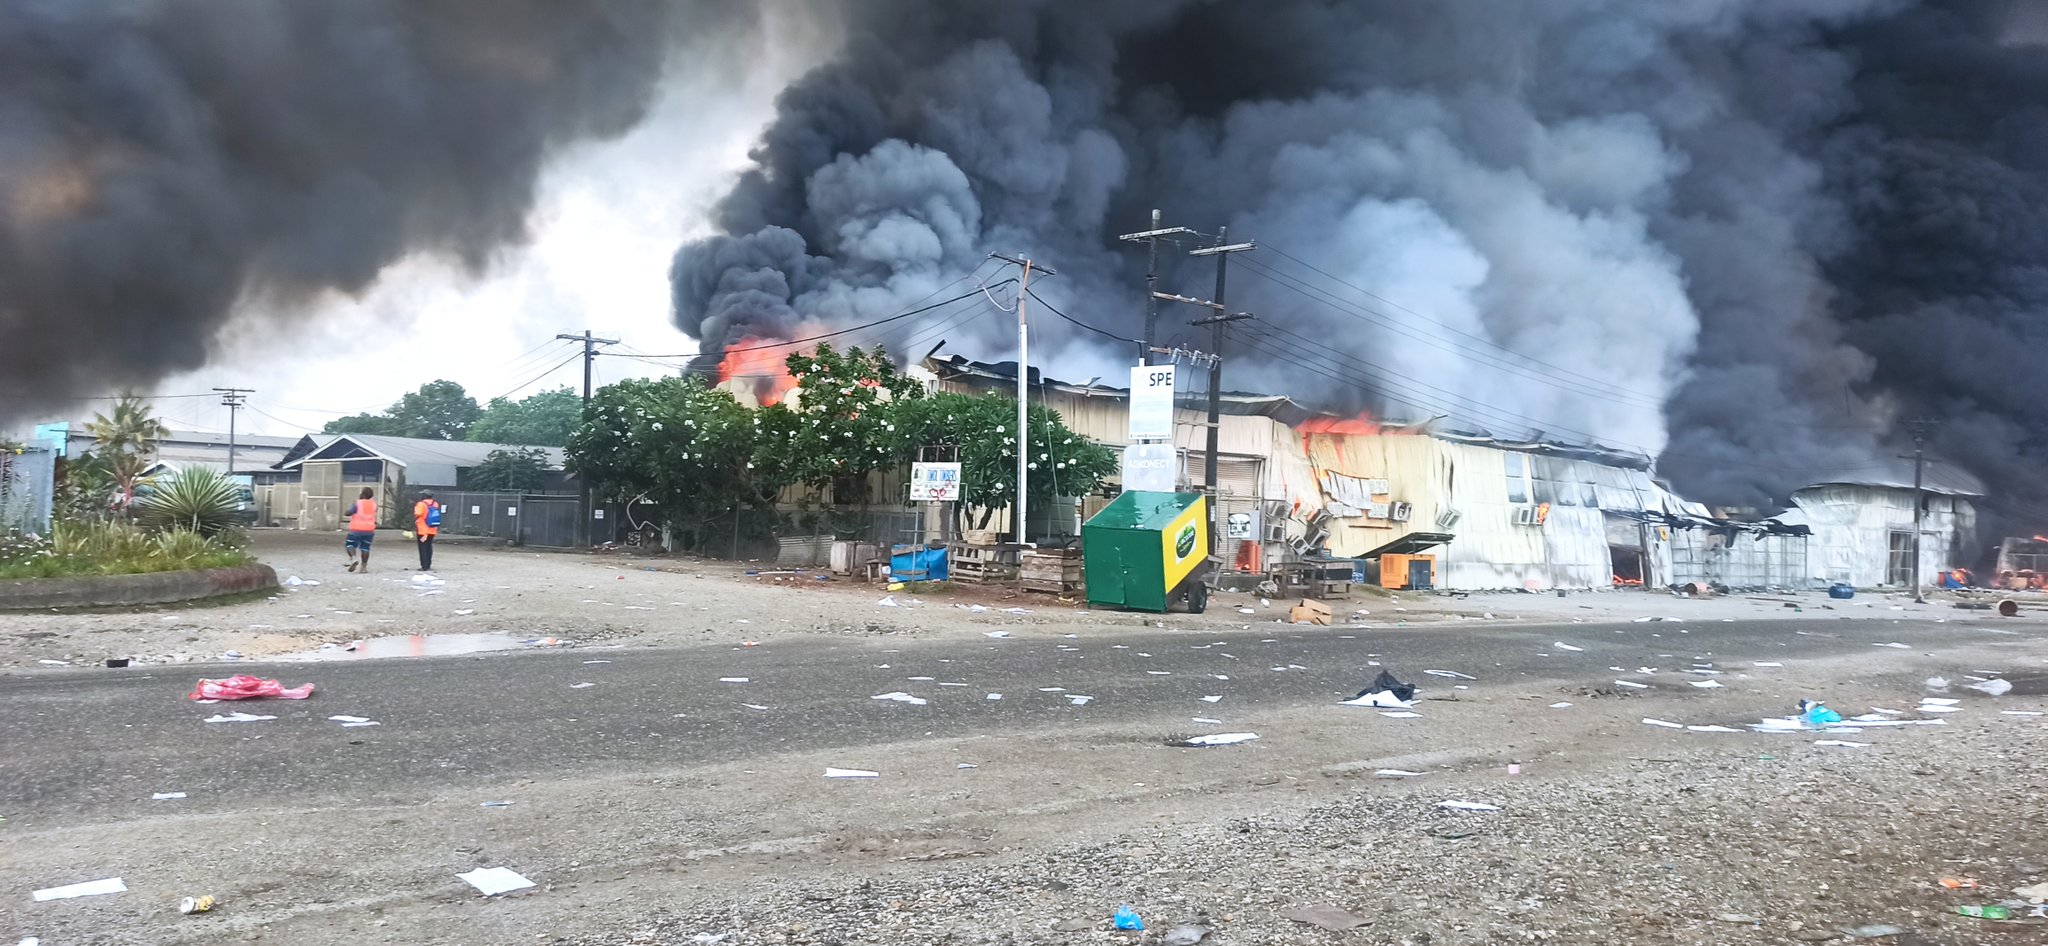 所罗门群岛总理住宅遭暴徒纵火焚烧